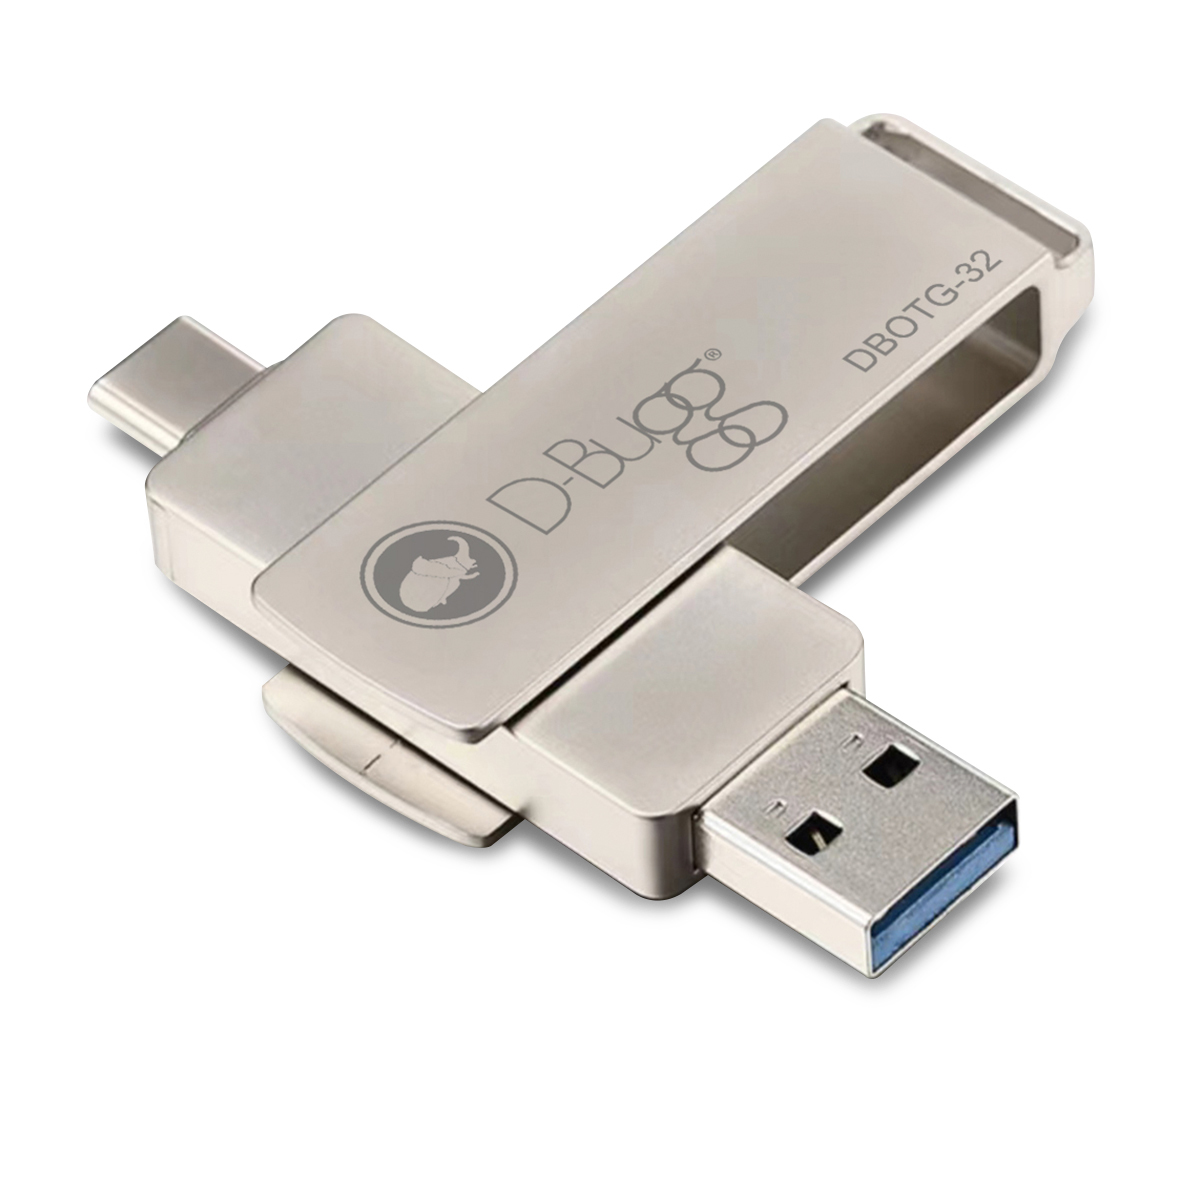 Memoria USB a USB Tipo C DBugg / 32 gb / Plata, USB y micro SD, Almacenamiento, Cómputo y Accesorios, Todas, Categoría